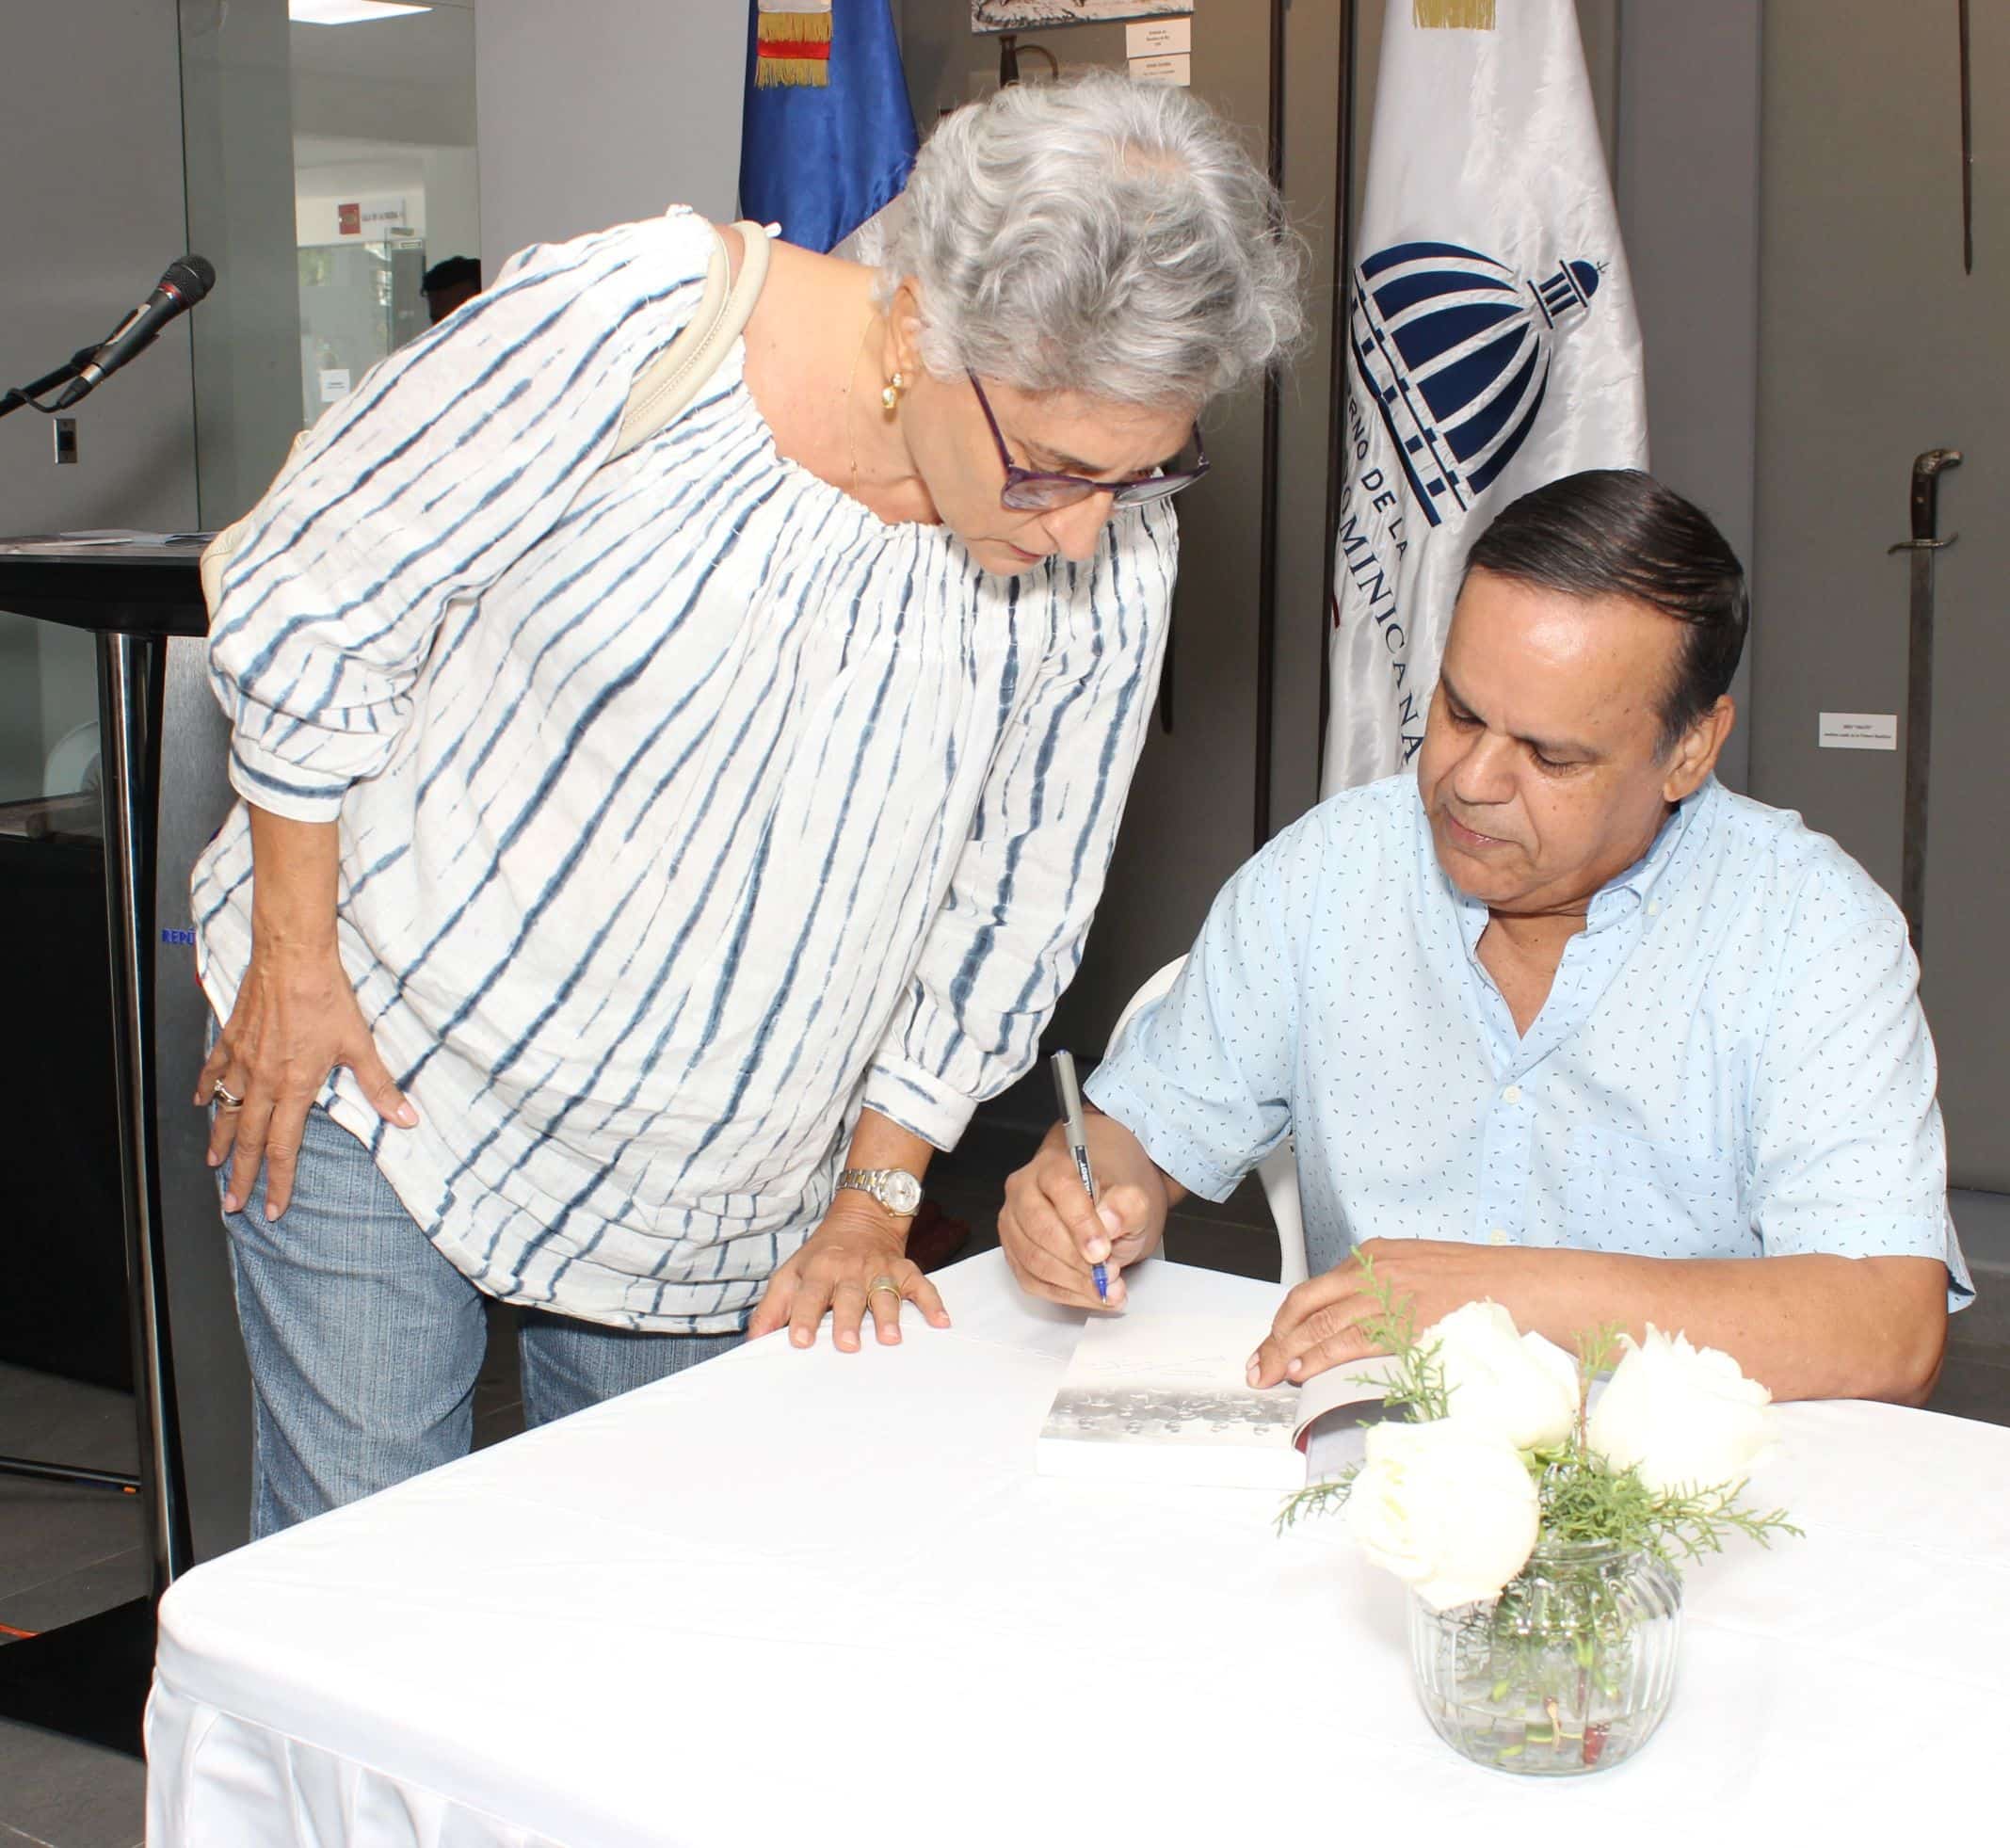 Orlando Inoa firma un ejemplar del manual "Breve historia dominicano" a Merche Siragusa.